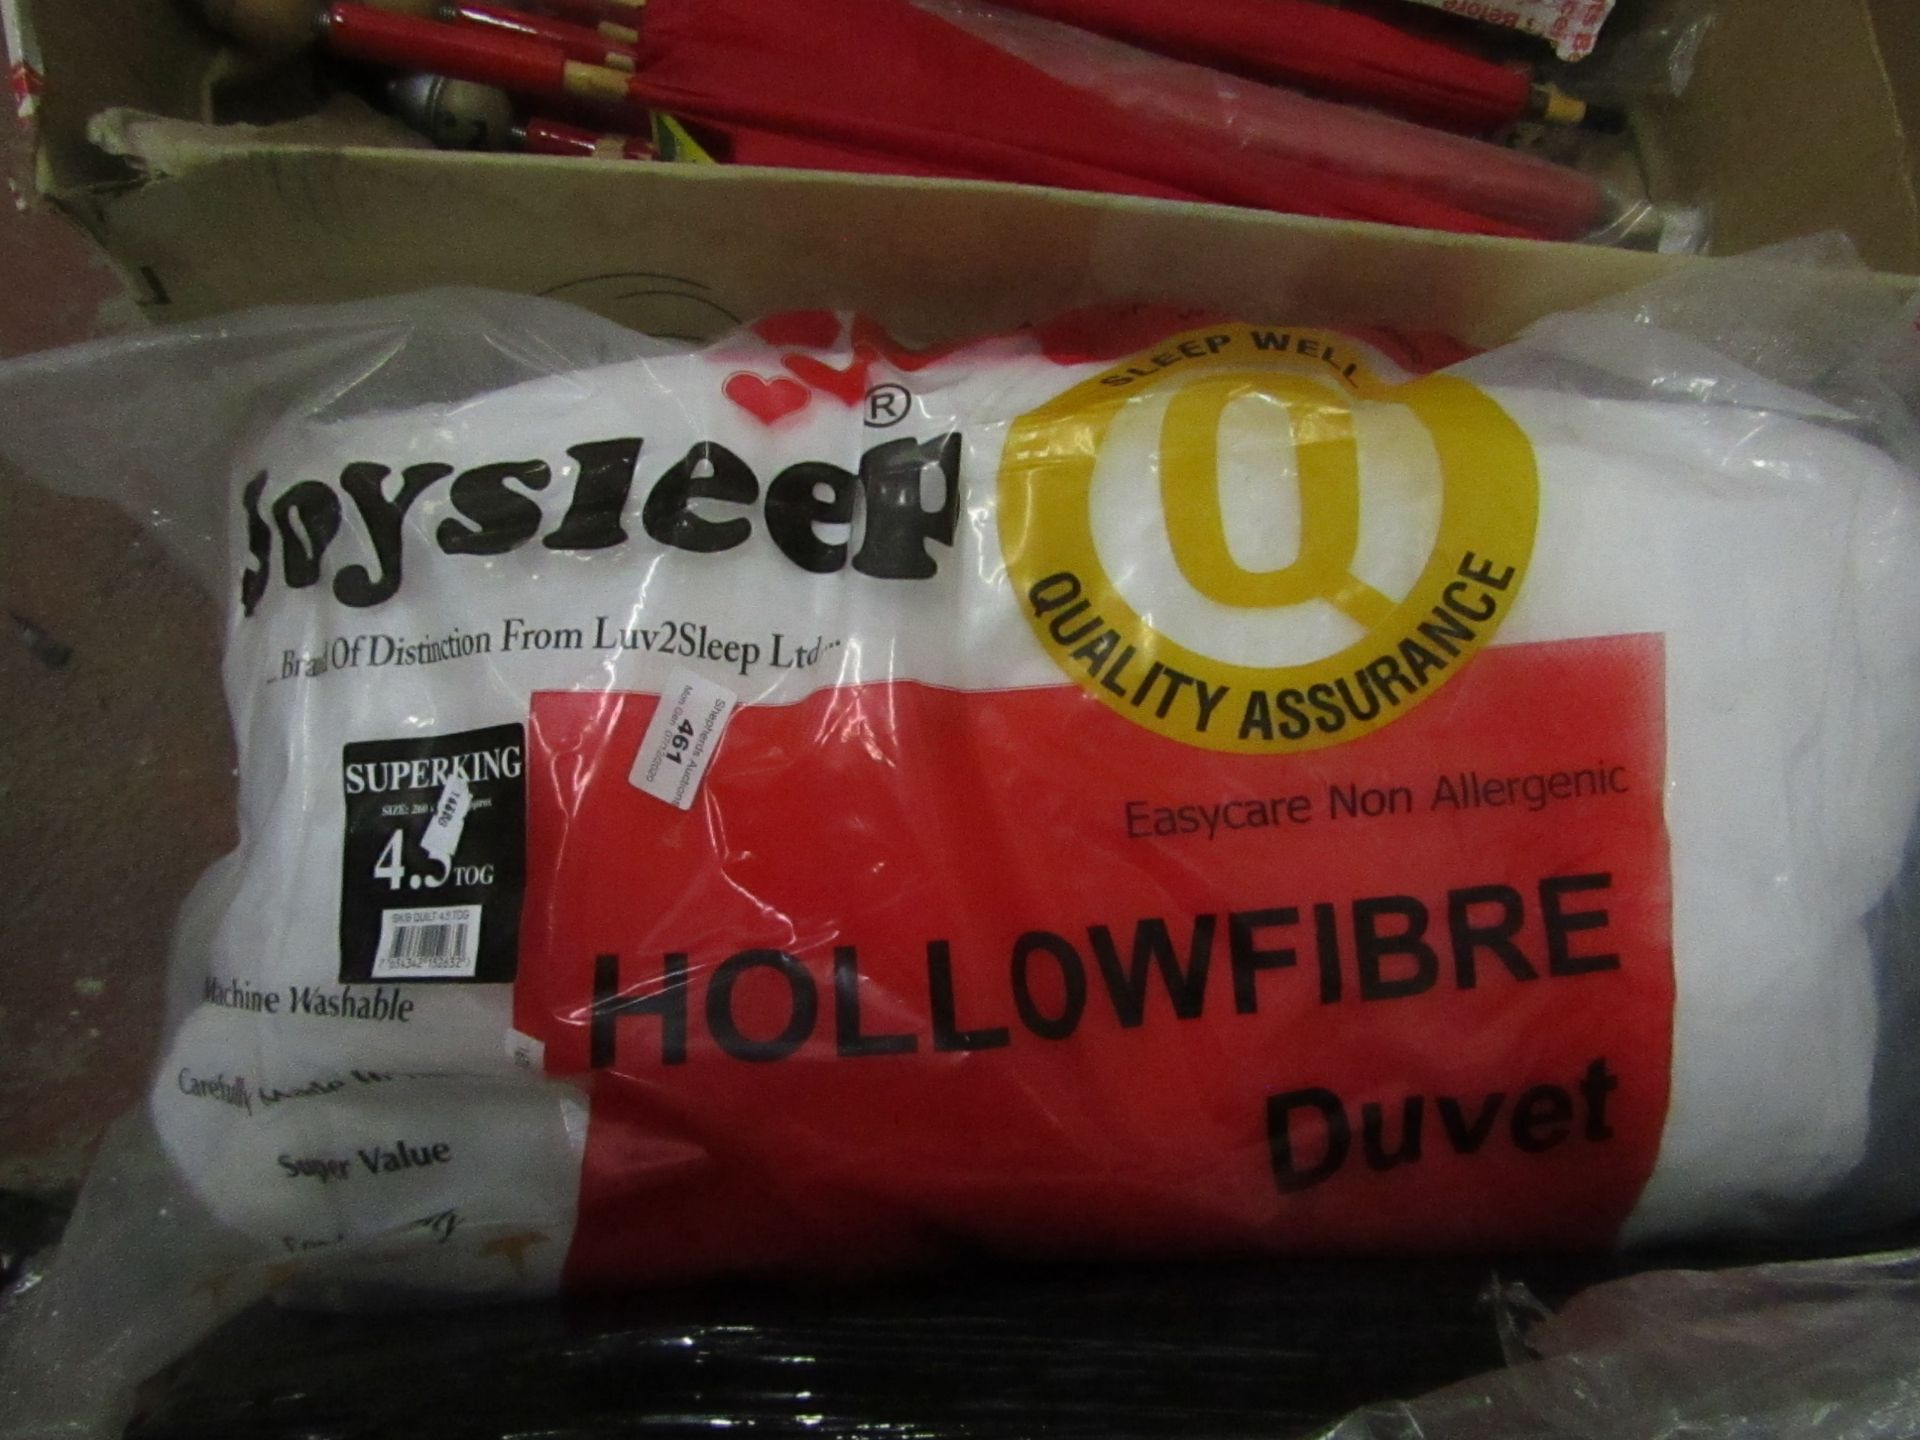 Joysleep Hollowfibre Superking 4.5 Tog Duvet. New & Packaged